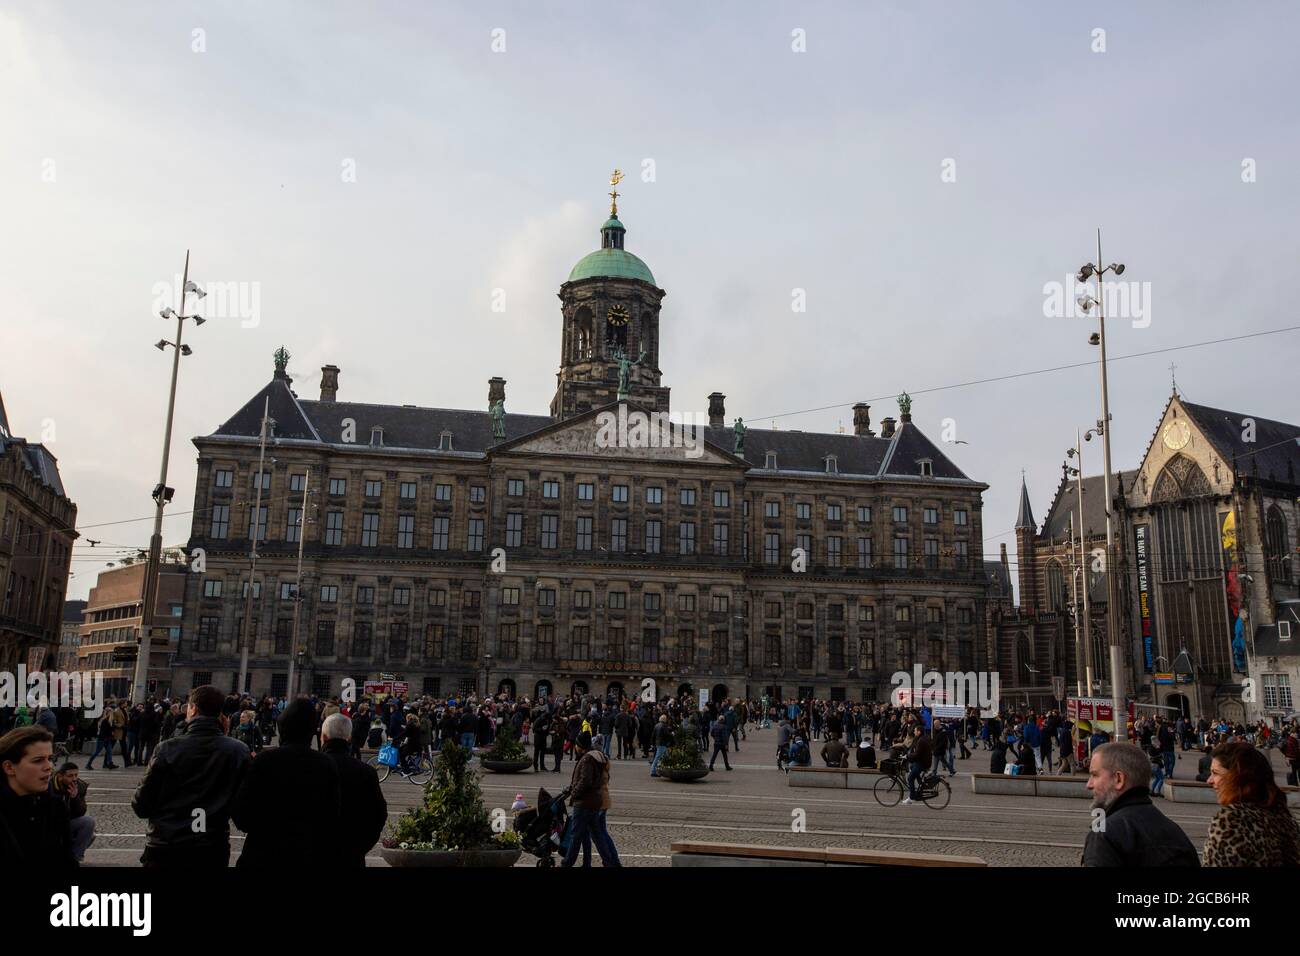 Palais royal sur la place Dam, Centrum, Amsterdam, pays-Bas. Banque D'Images